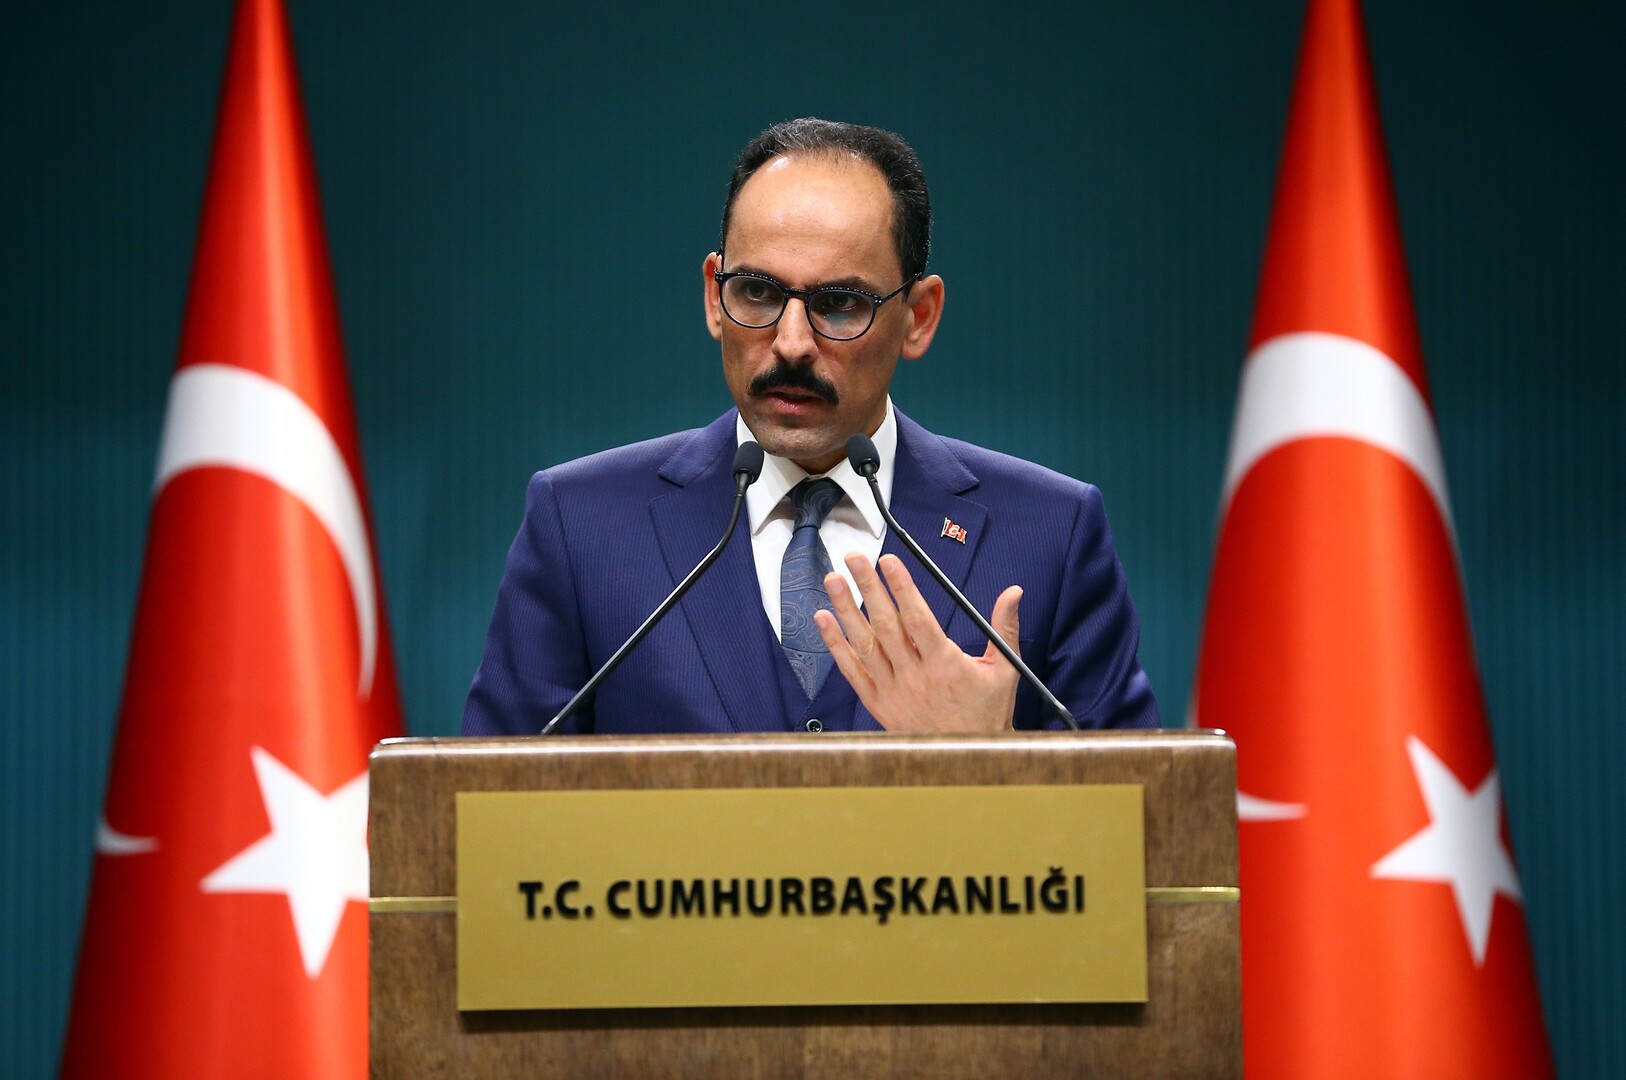 الرئاسة التركية: هناك اتصالات بين أجهزتنا الاستخباراتية ونظيرتها السورية بشكل دوري